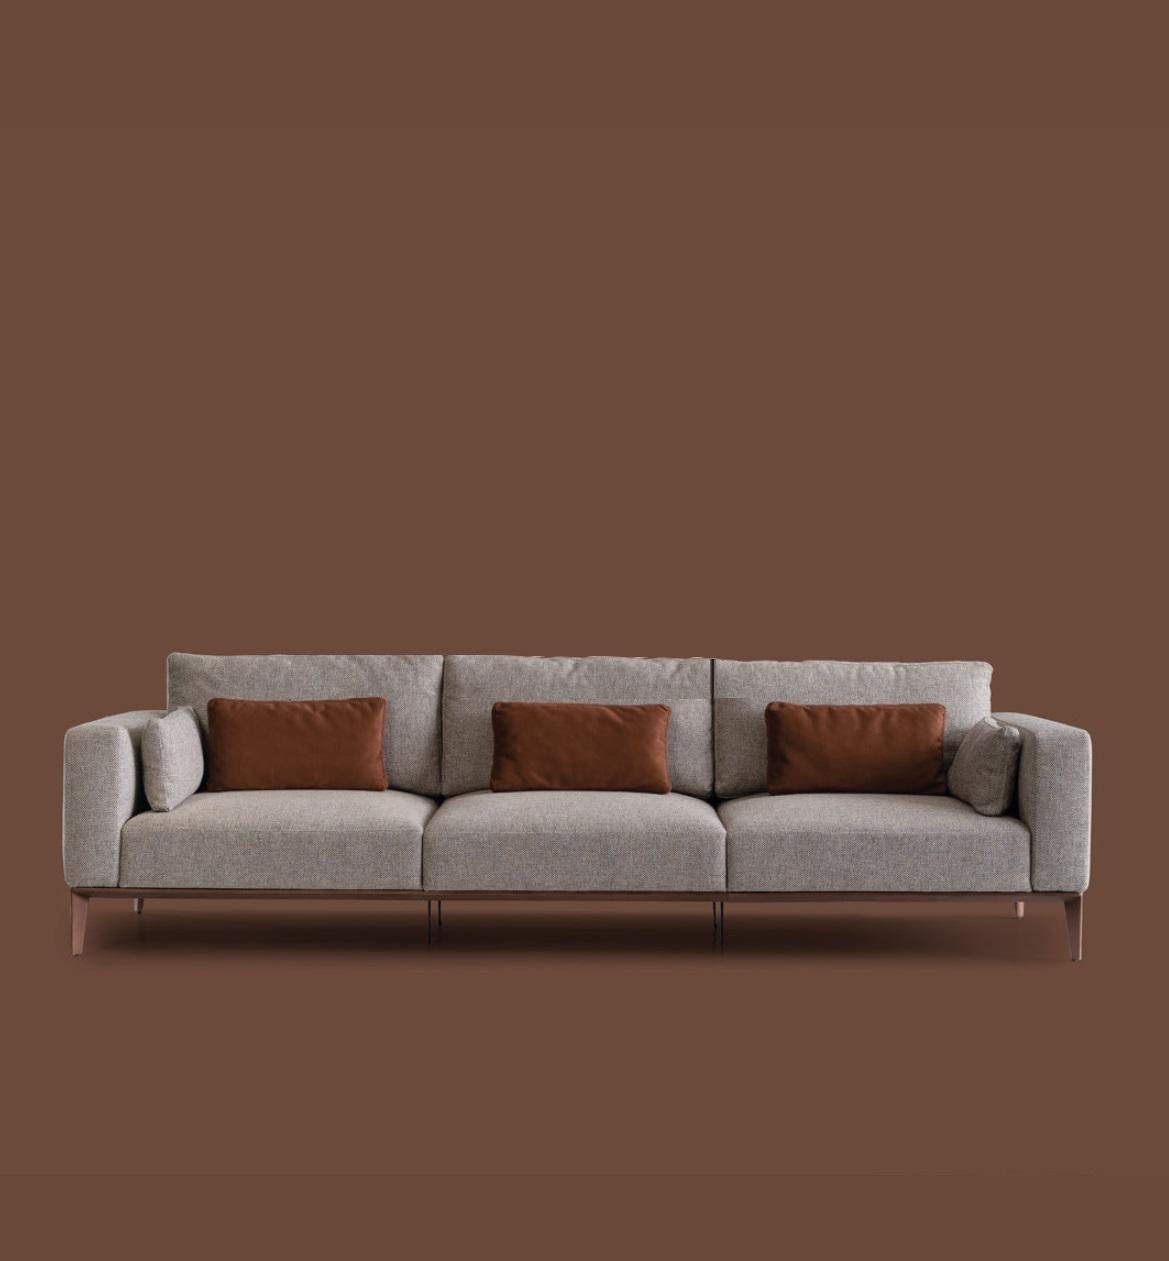 JVmoebel Sofa, Sofagarnitur Couch Möbel Polster Set Einrichtung Garnitur Couchen